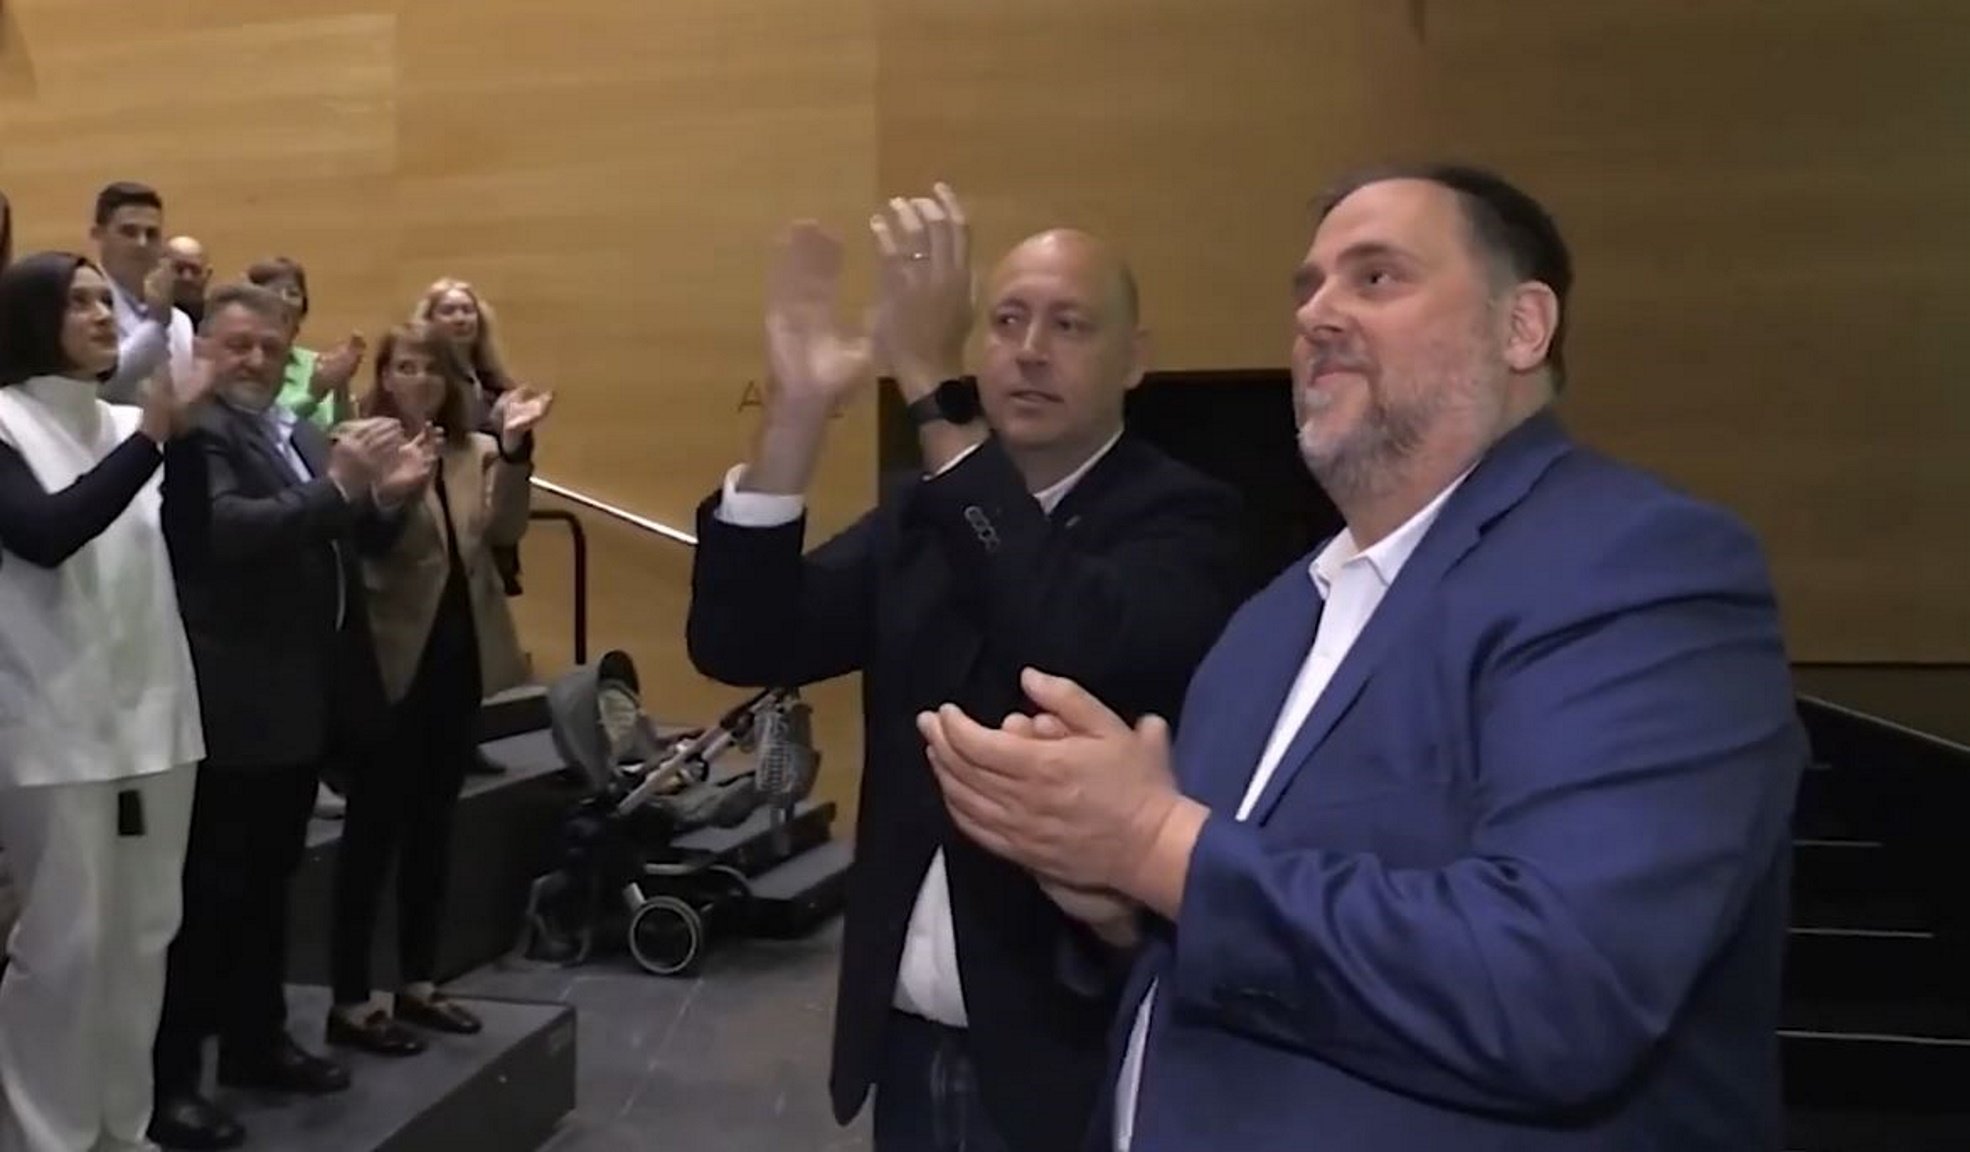 L'alcalde de la Ràpita, Josep Caparrós (ERC), deixa la política després de la debacle